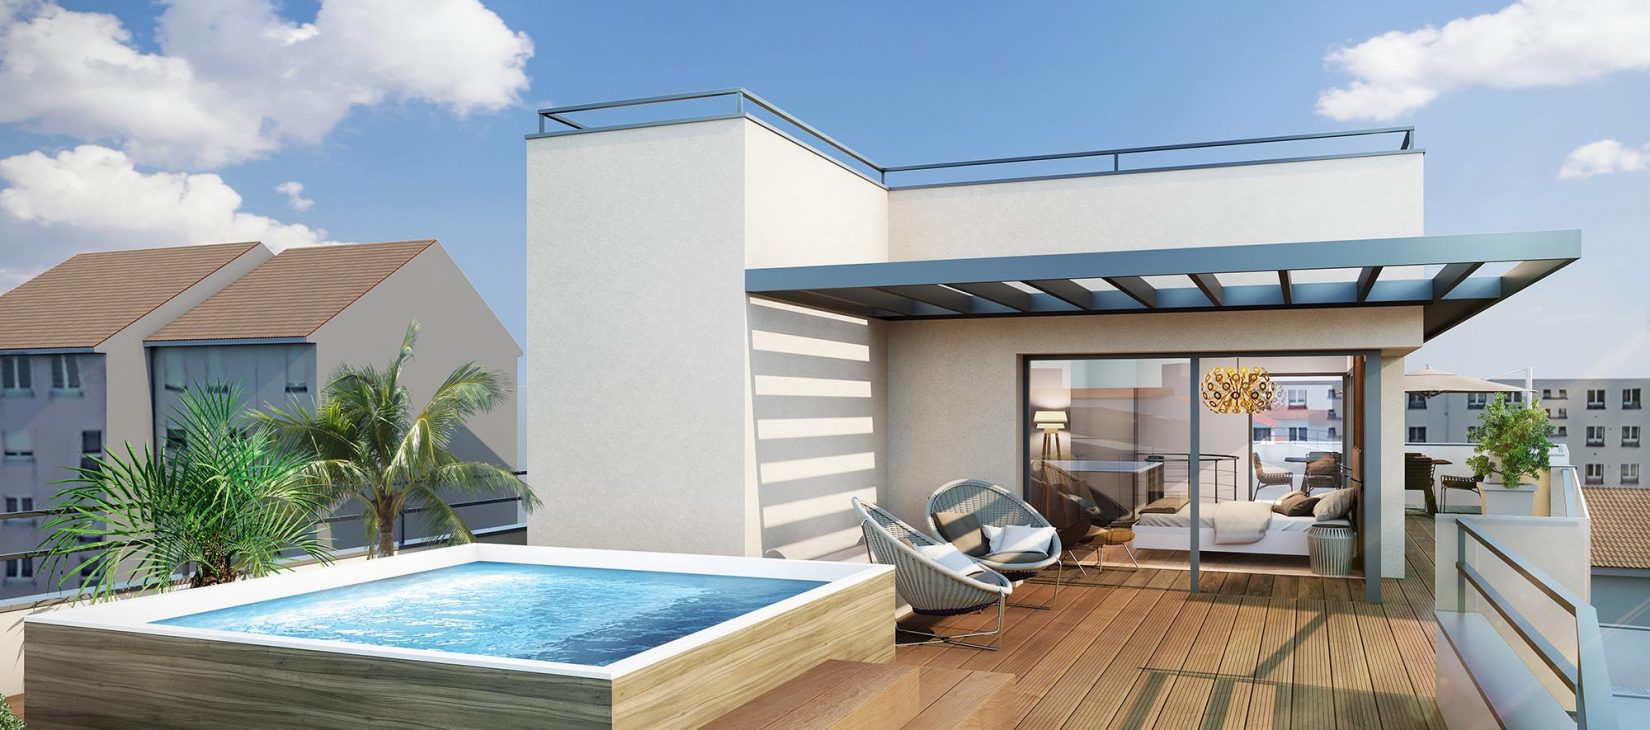 Programme neuf villeurbanne Aéro : appartement avec terrasse et piscine